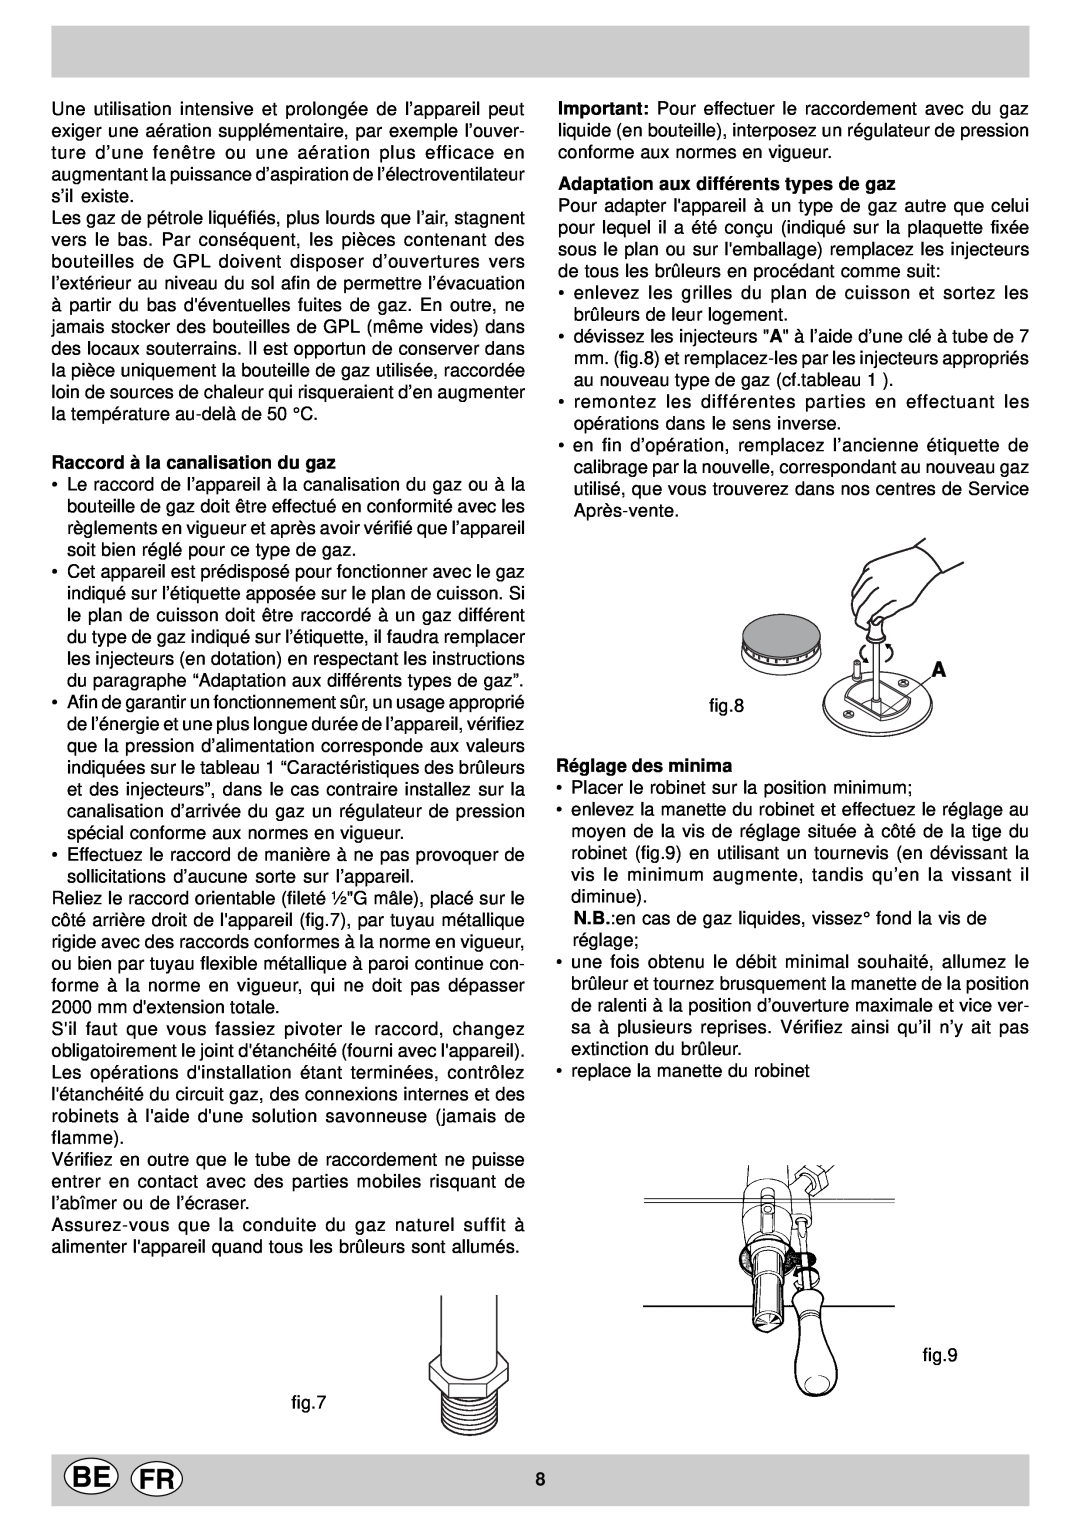 Indesit KP 958 MS.B manual Raccord à la canalisation du gaz, Adaptation aux différents types de gaz, Réglage des minima 